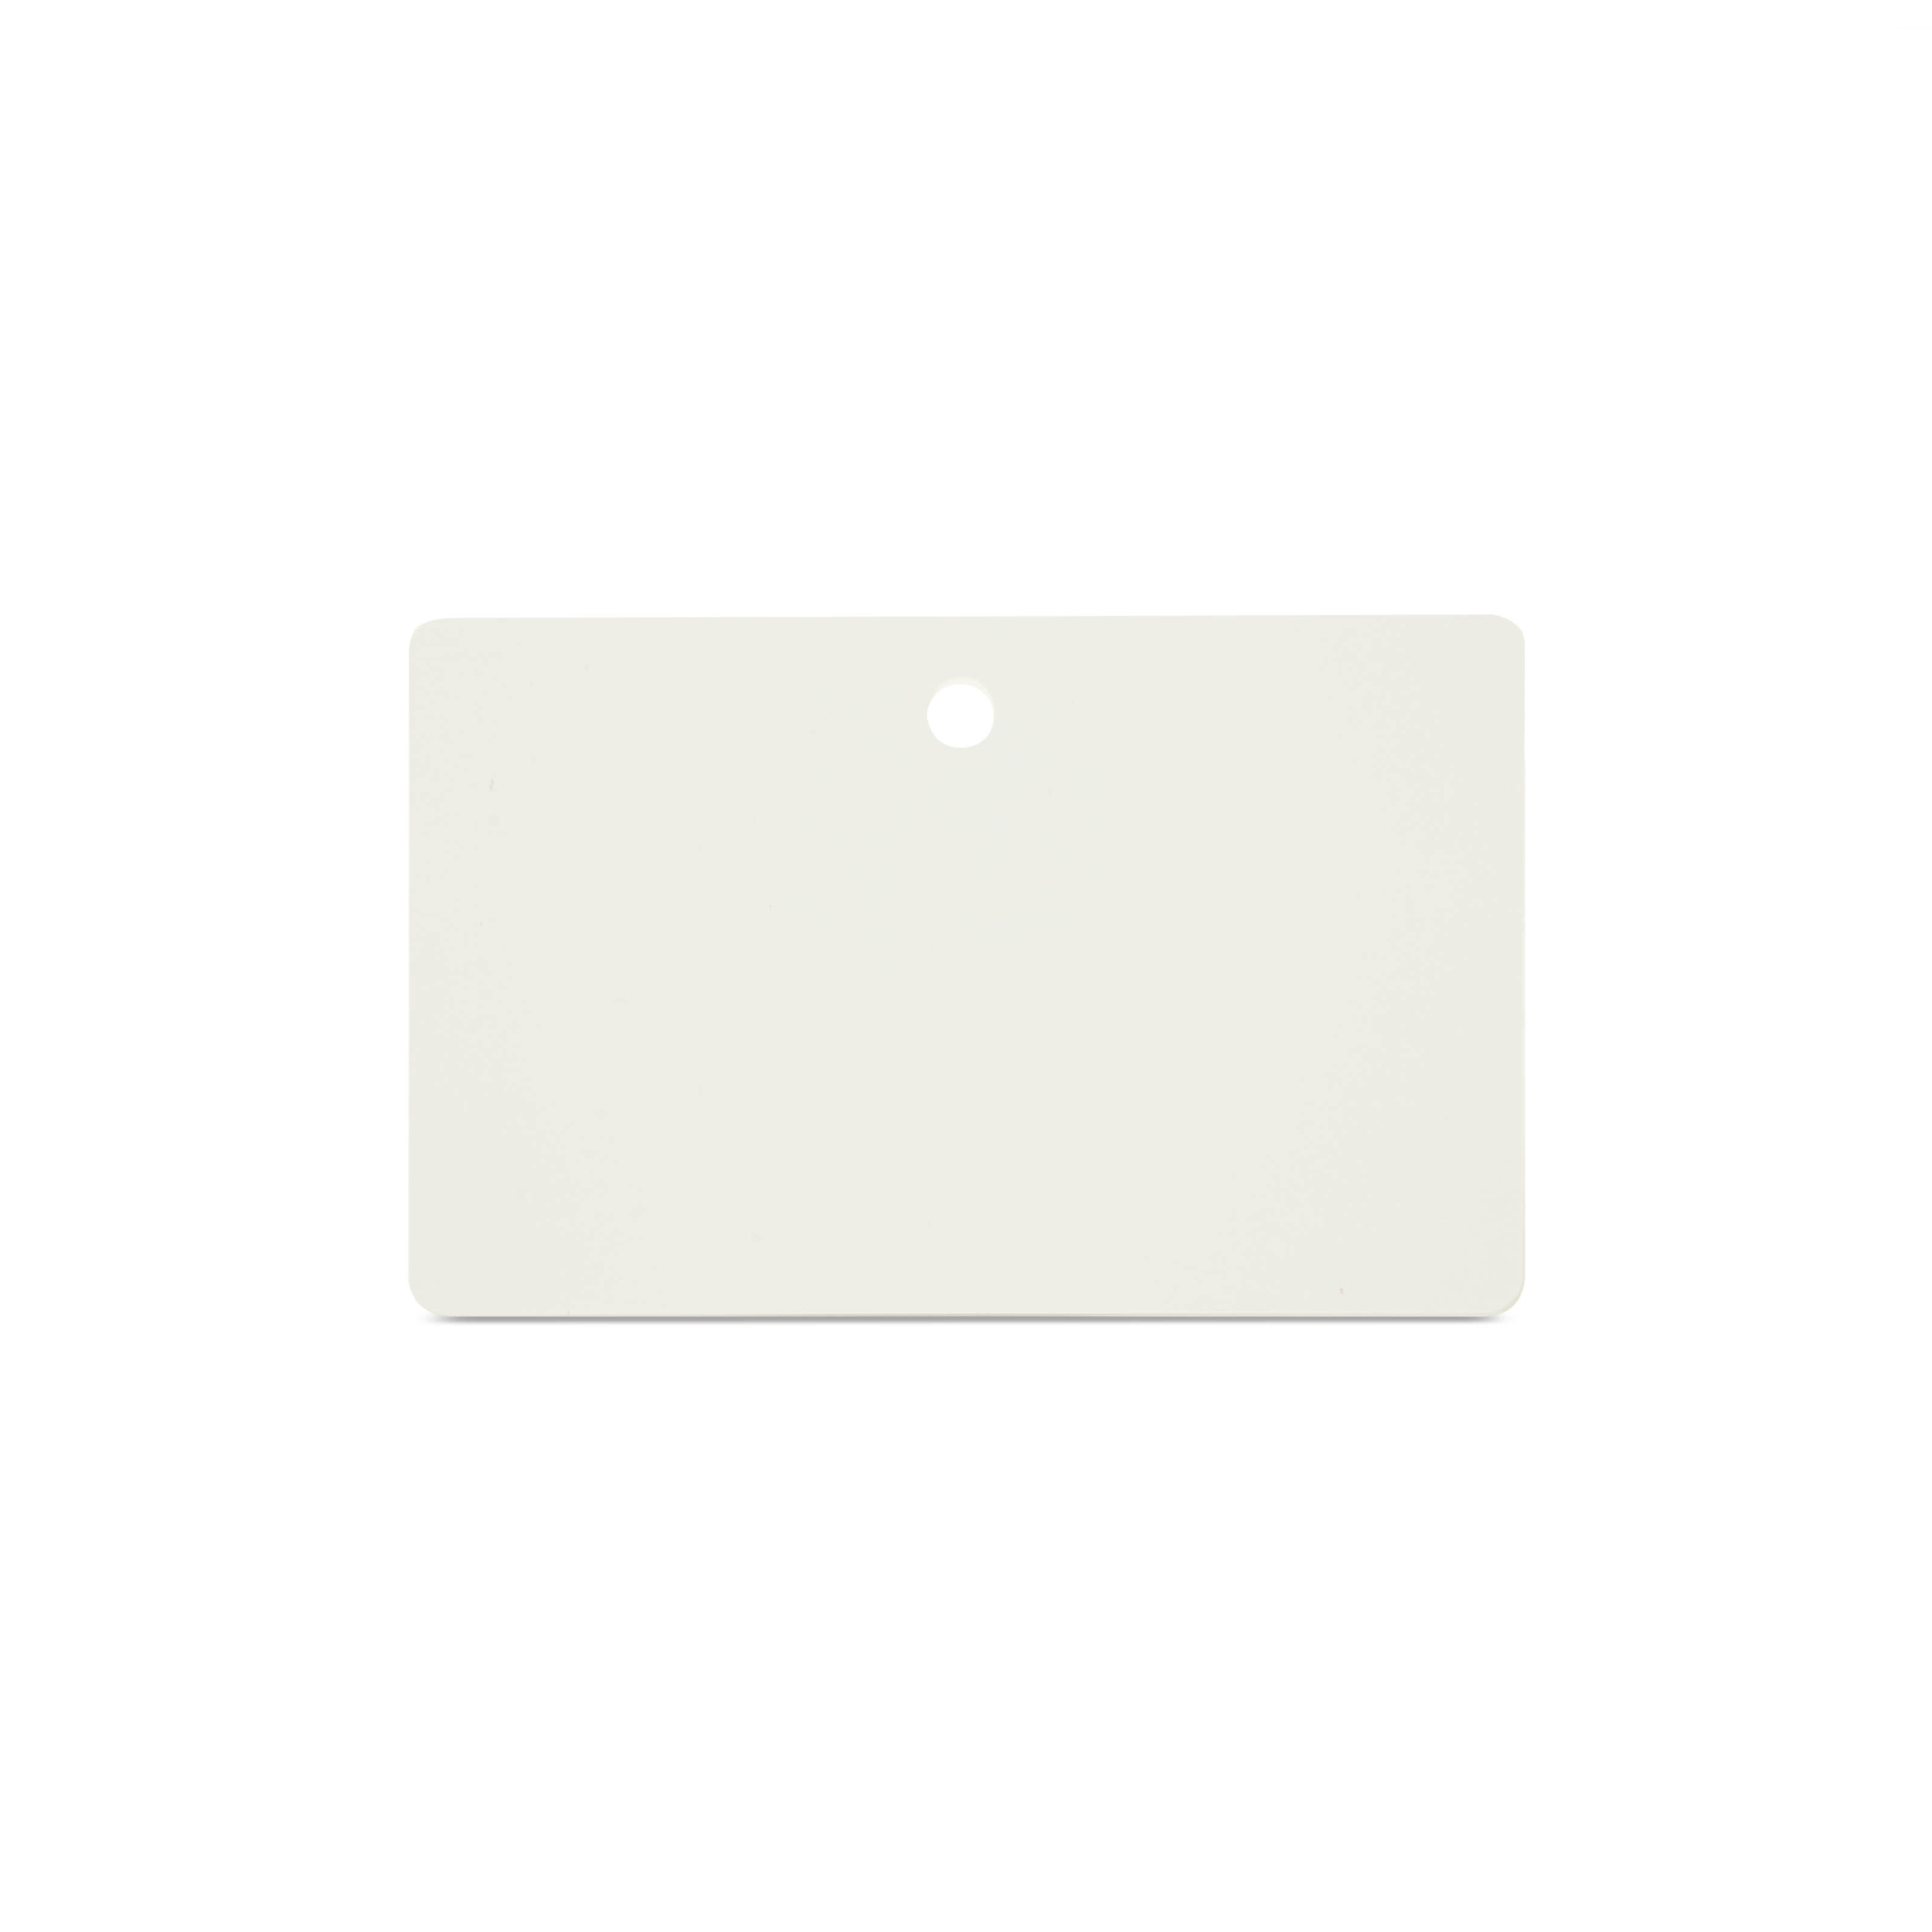 Horizontal stehenden NFC Karte in weiß mit runder Lochung 